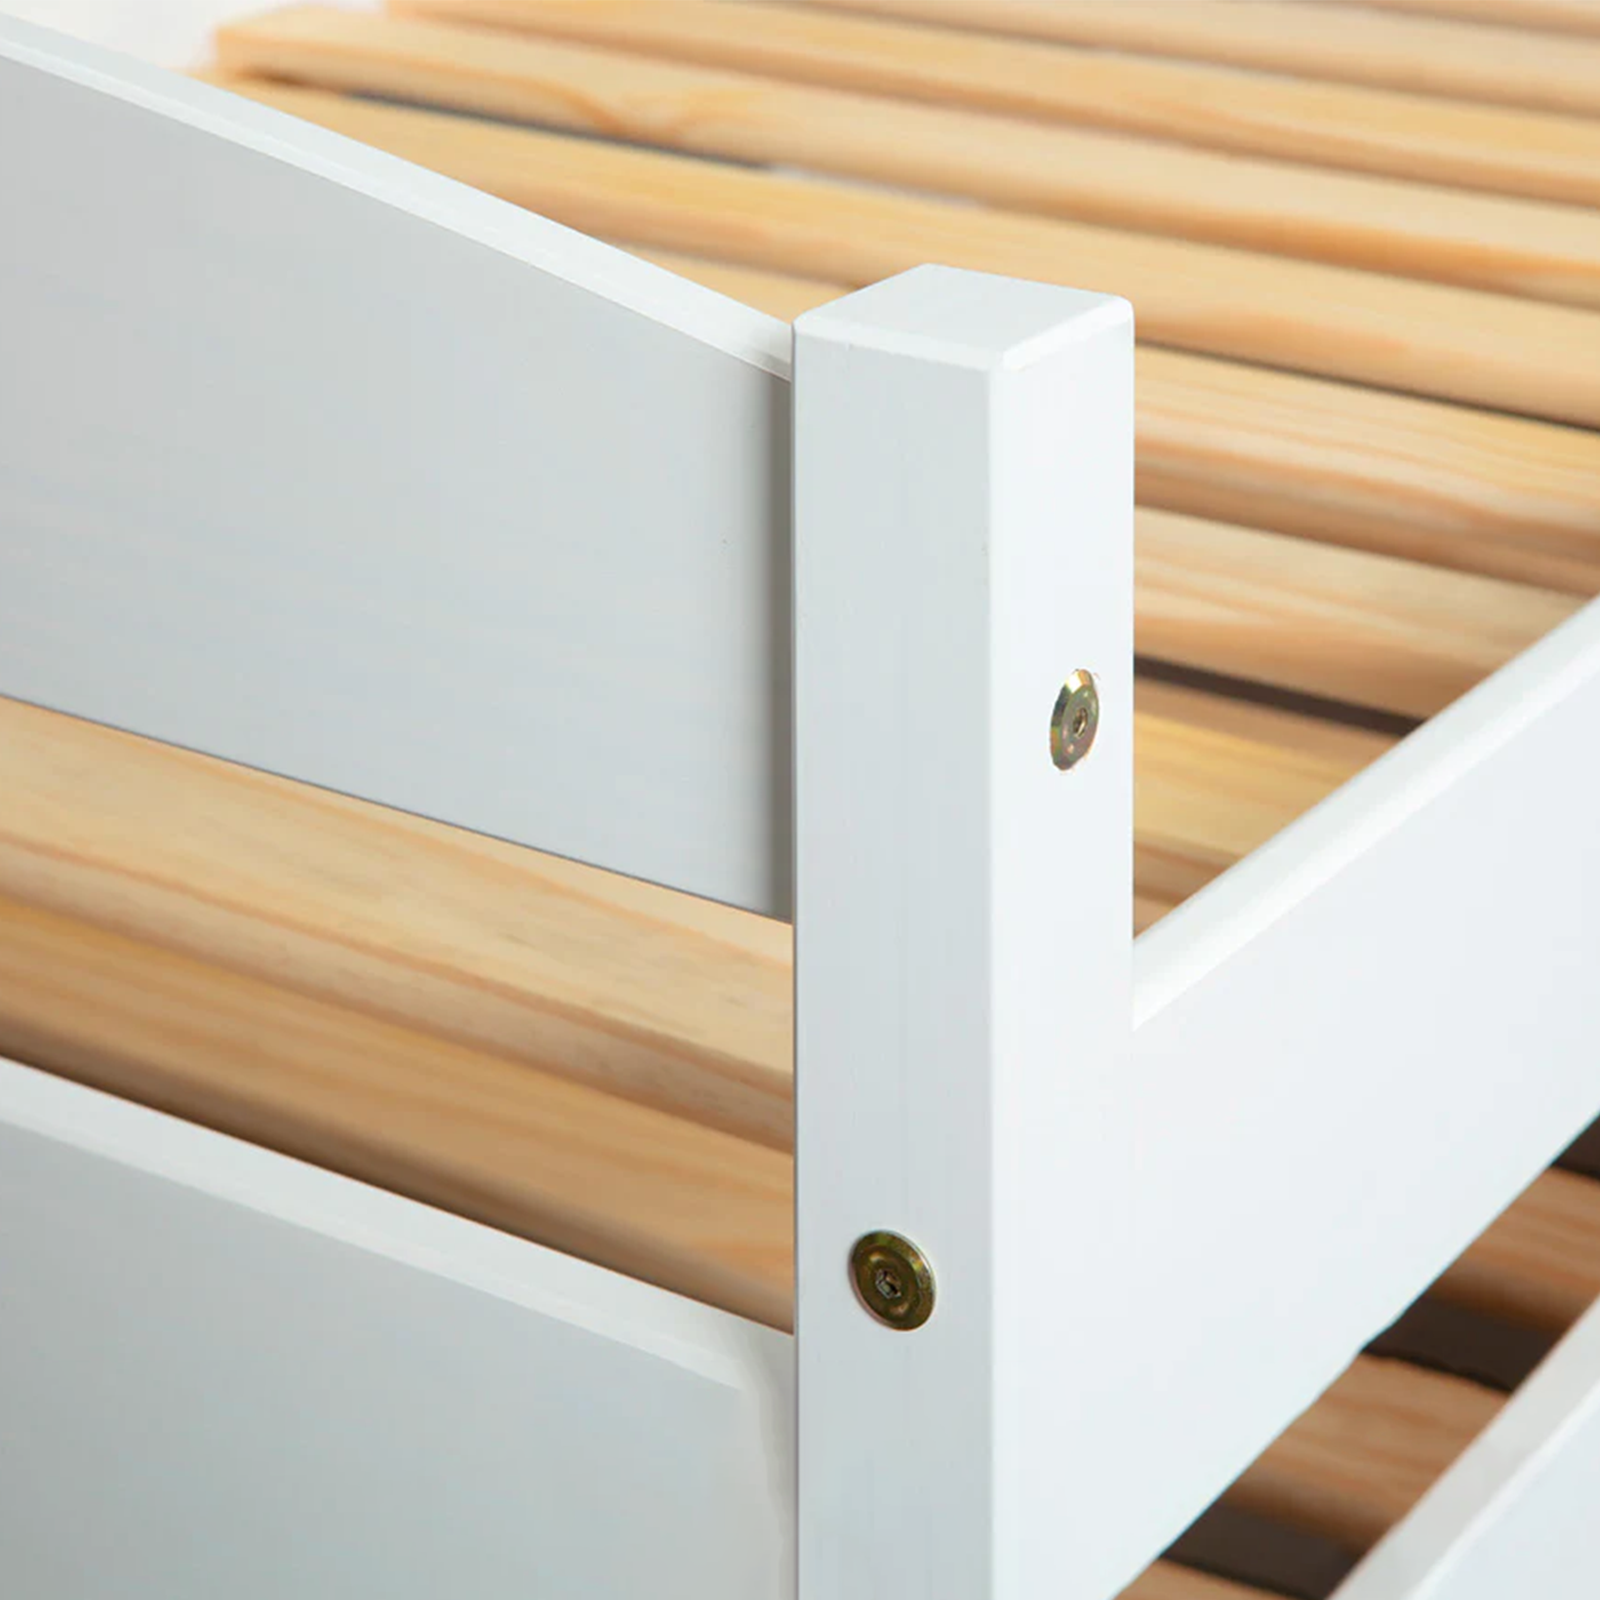 Cama doble extraíble abatible 3 funciones en madera blanca 200x90 cm 62h